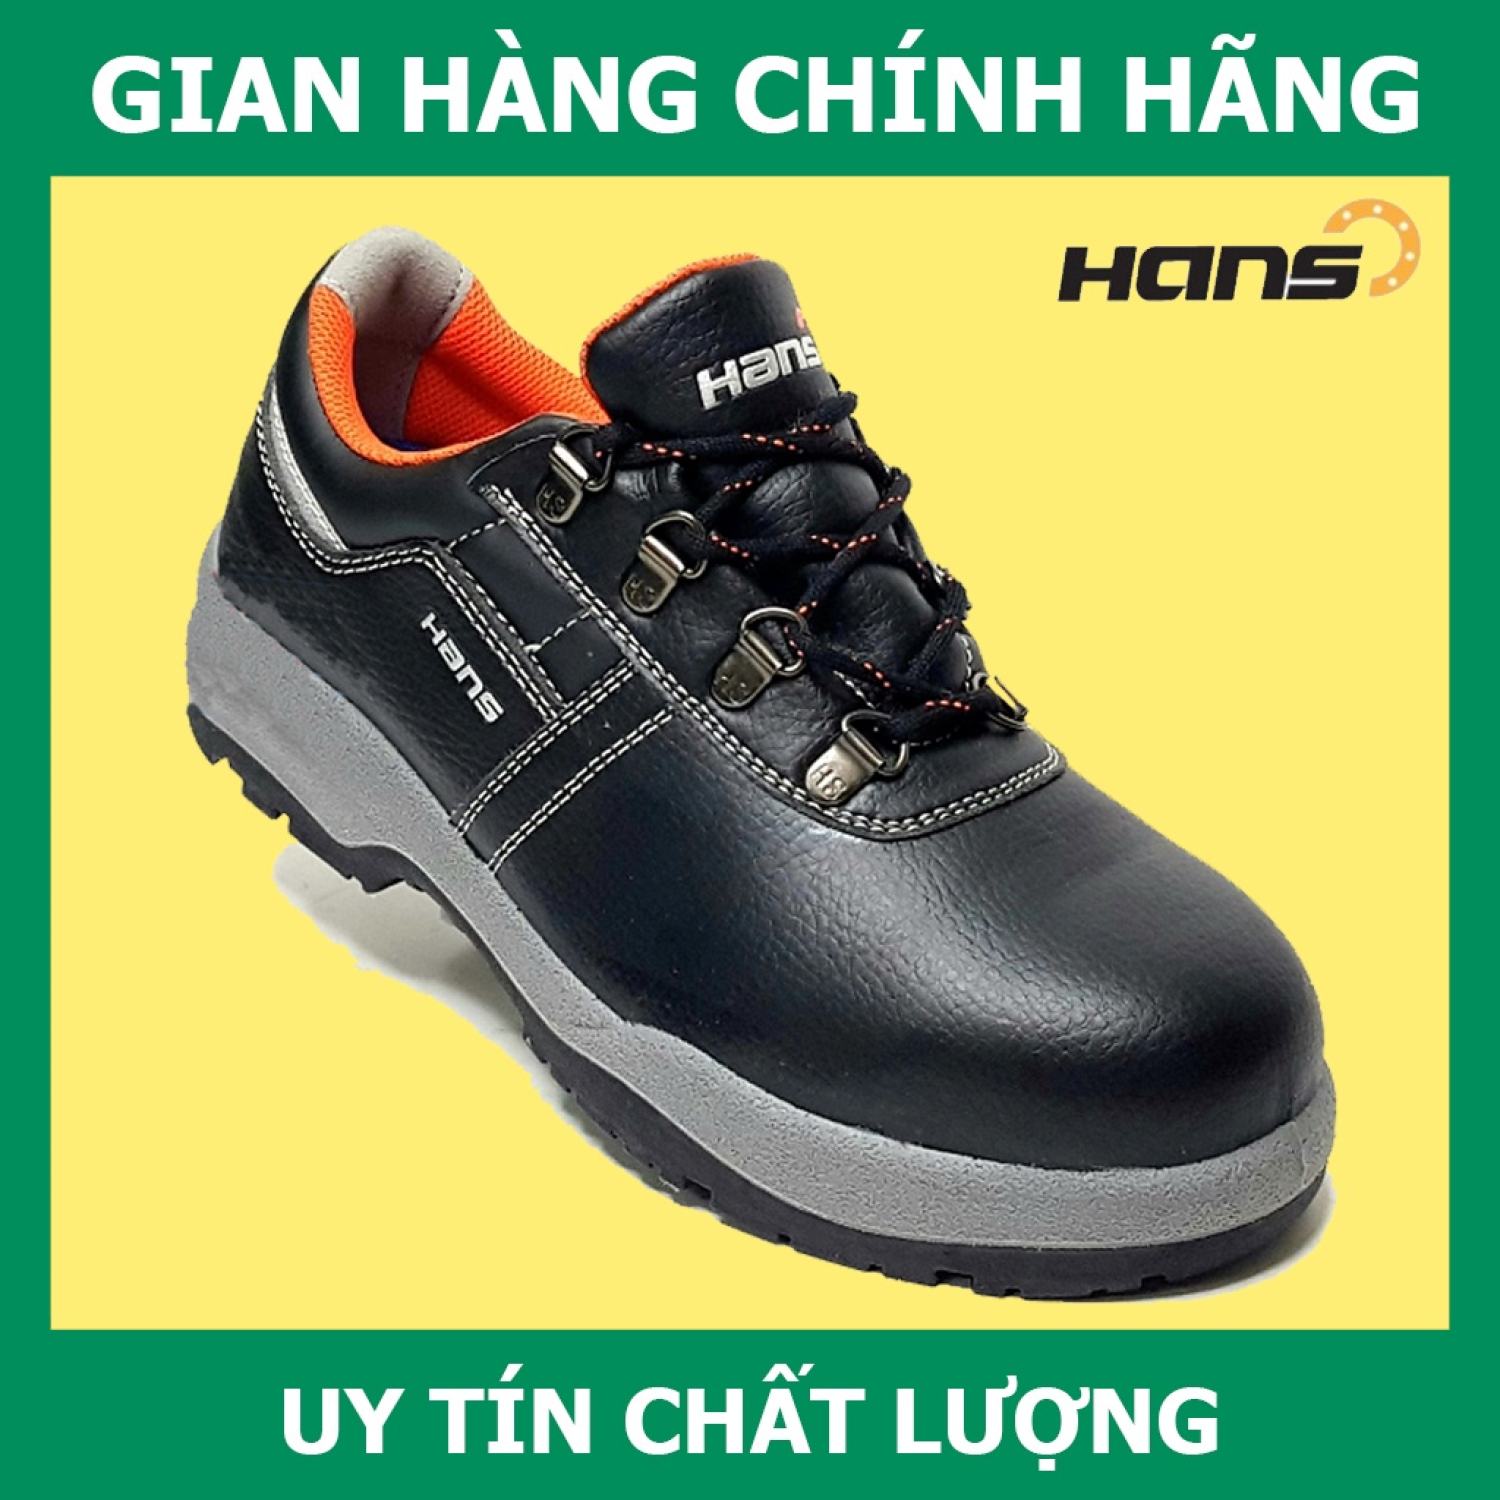 Giày Bảo Hộ Hans HS-60 Siêu Nhẹ, Da Chất Lượng Cao, Chống Thấm Nước thumbnail